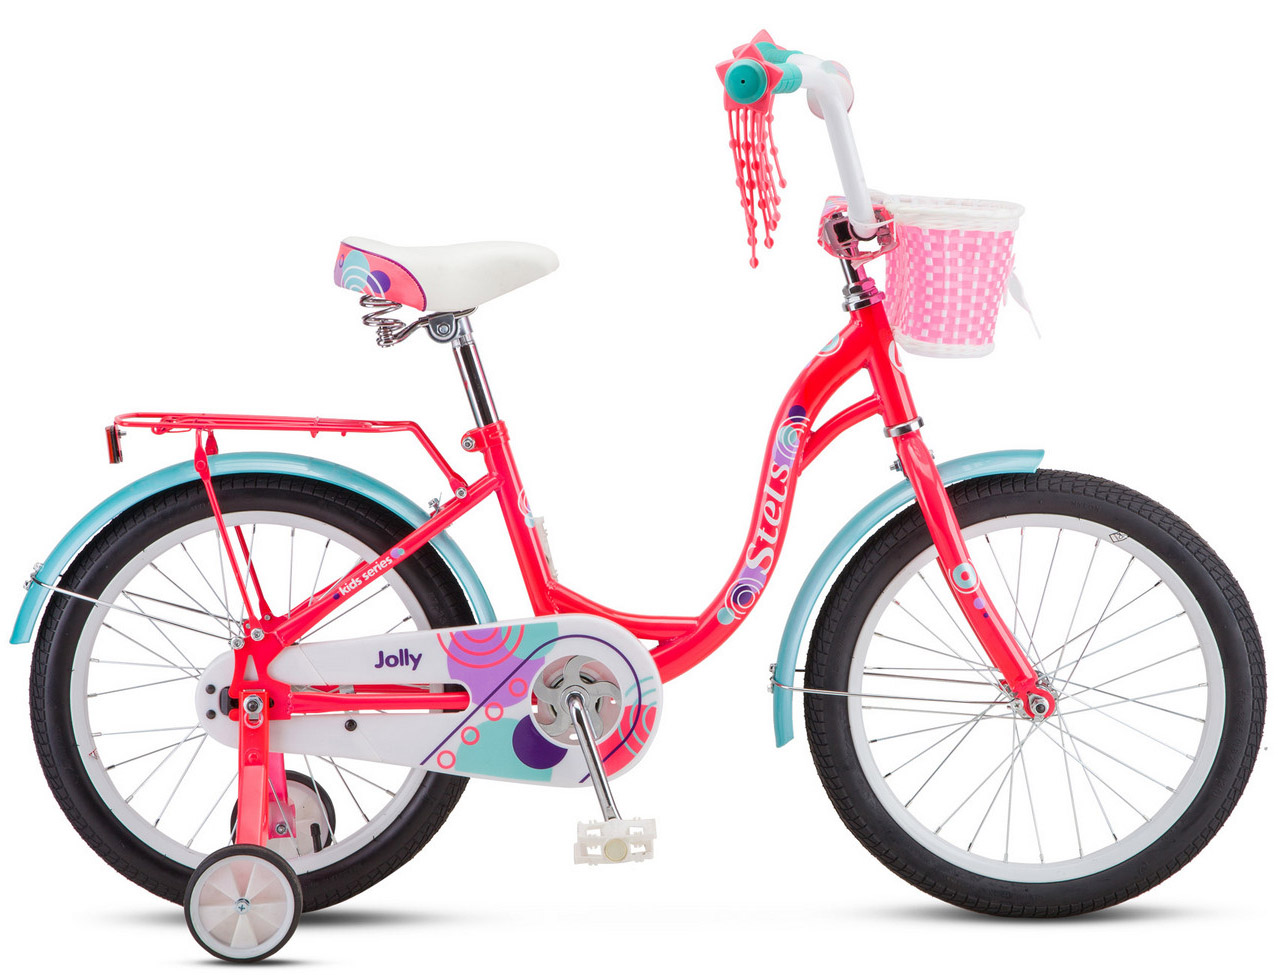  Отзывы о Детском велосипеде Stels Jolly 18 V010 2019